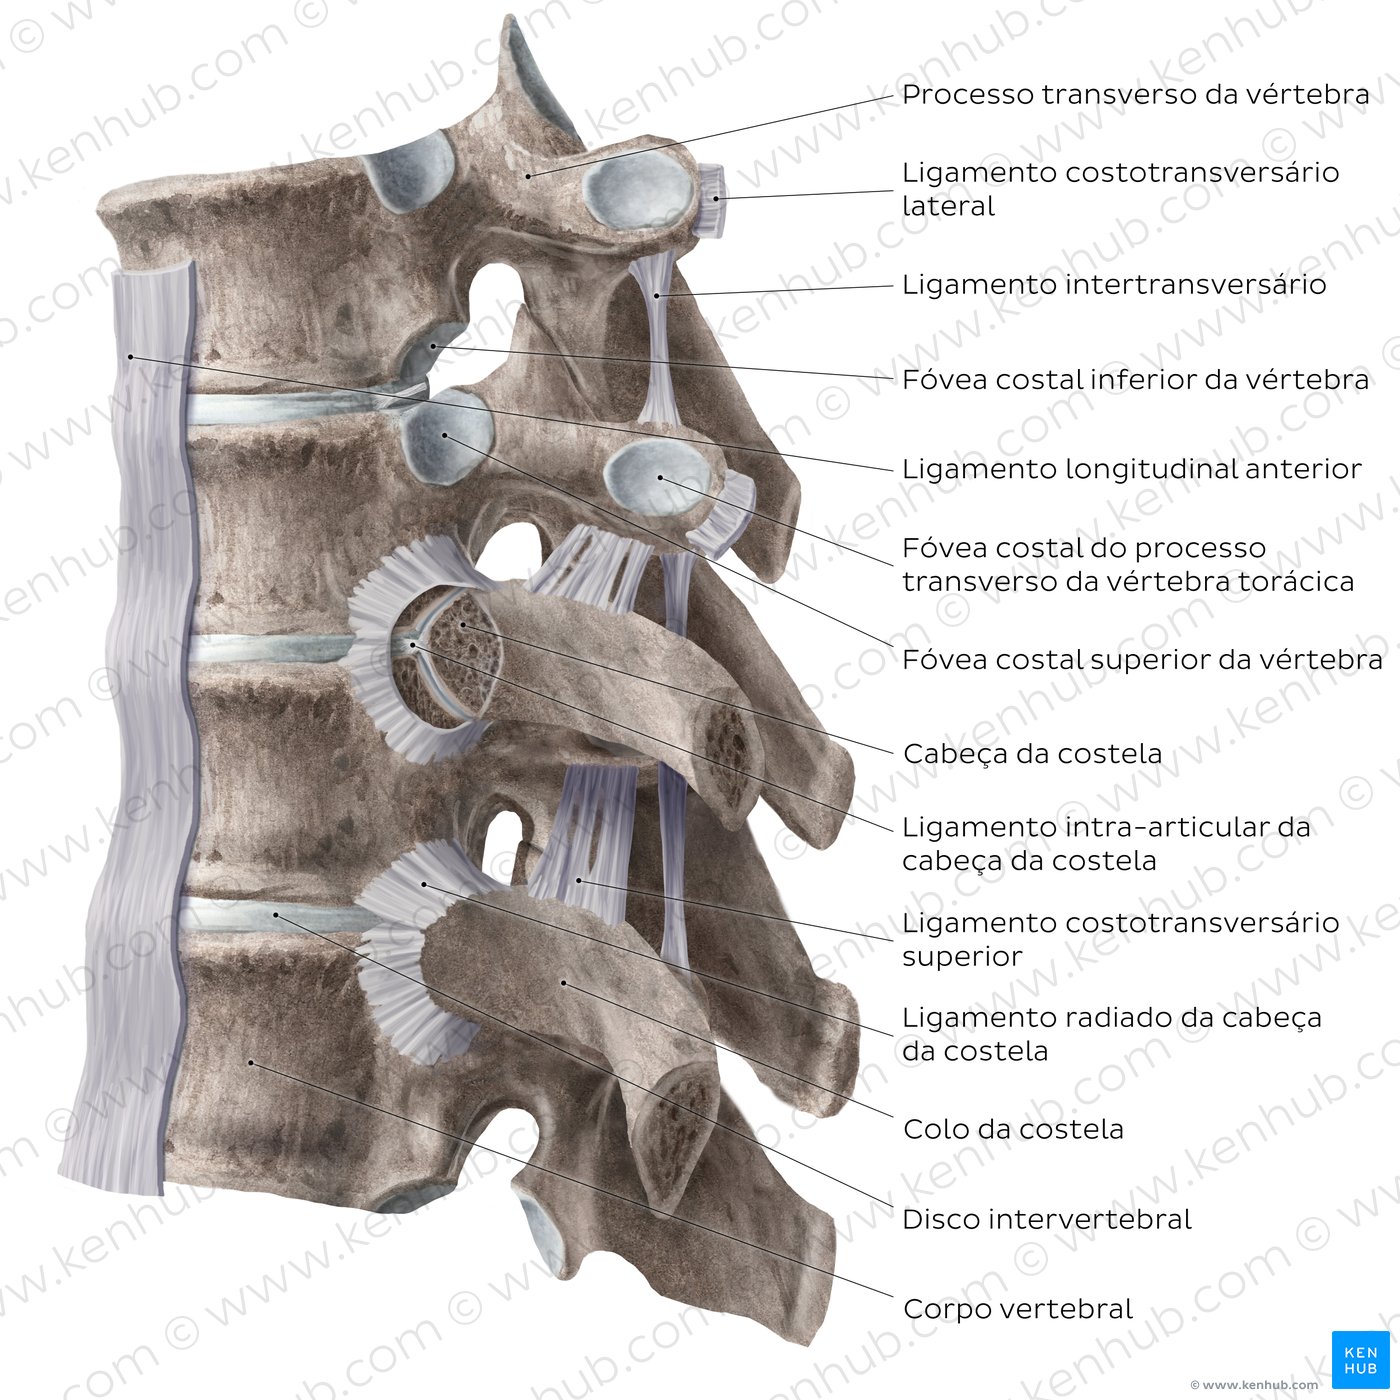 Articulações e ligamentos costovertebrais - diagrama